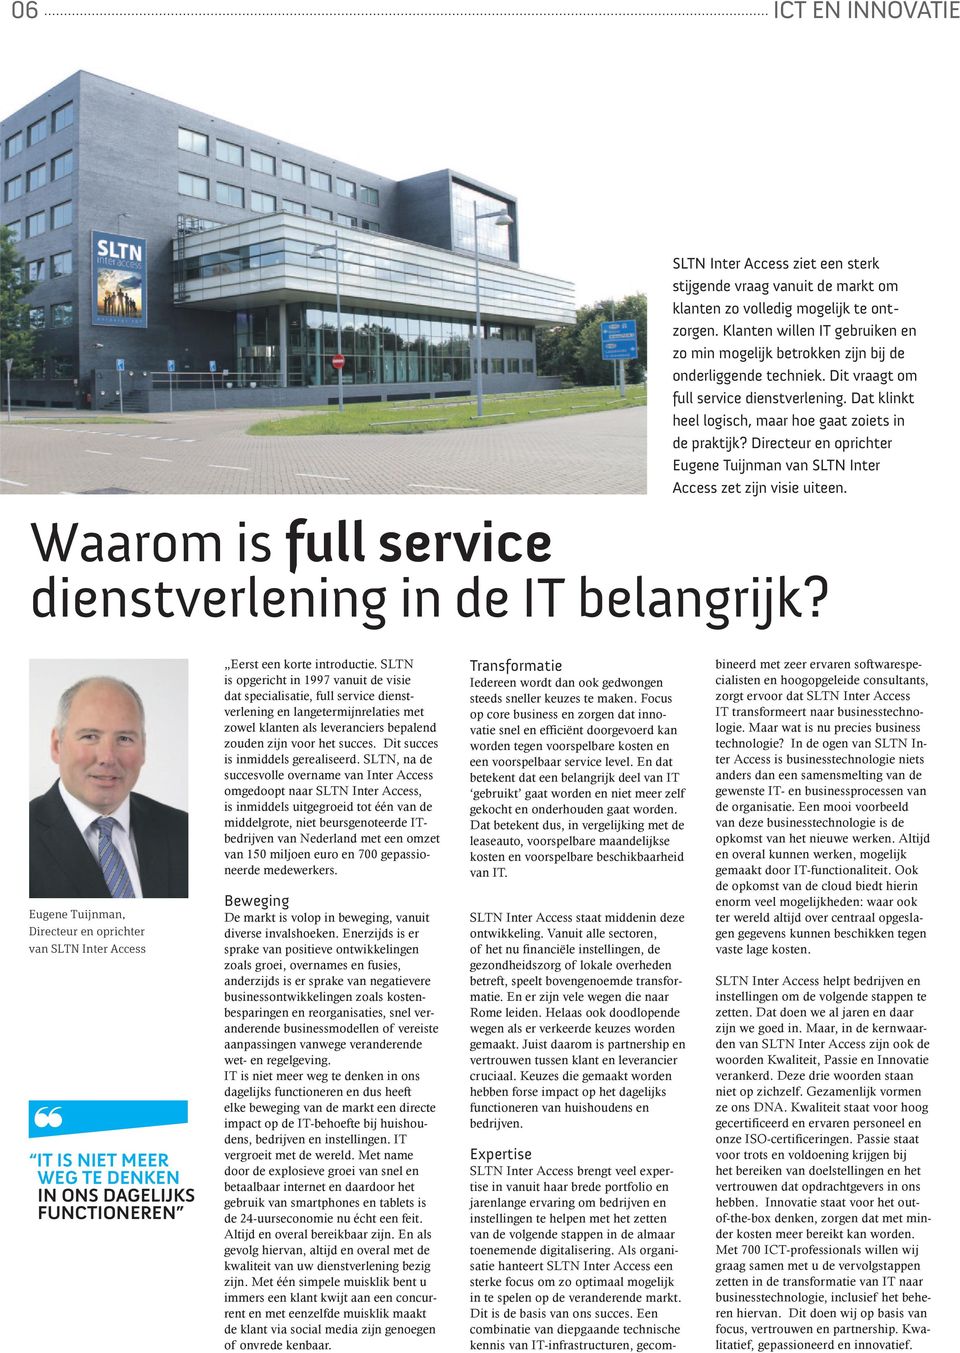 Directeur en oprichter eugene Tuijnman van SLTn Inter Access zet zijn visie uiteen. Waarom is full service dienstverlening in de IT belangrijk?